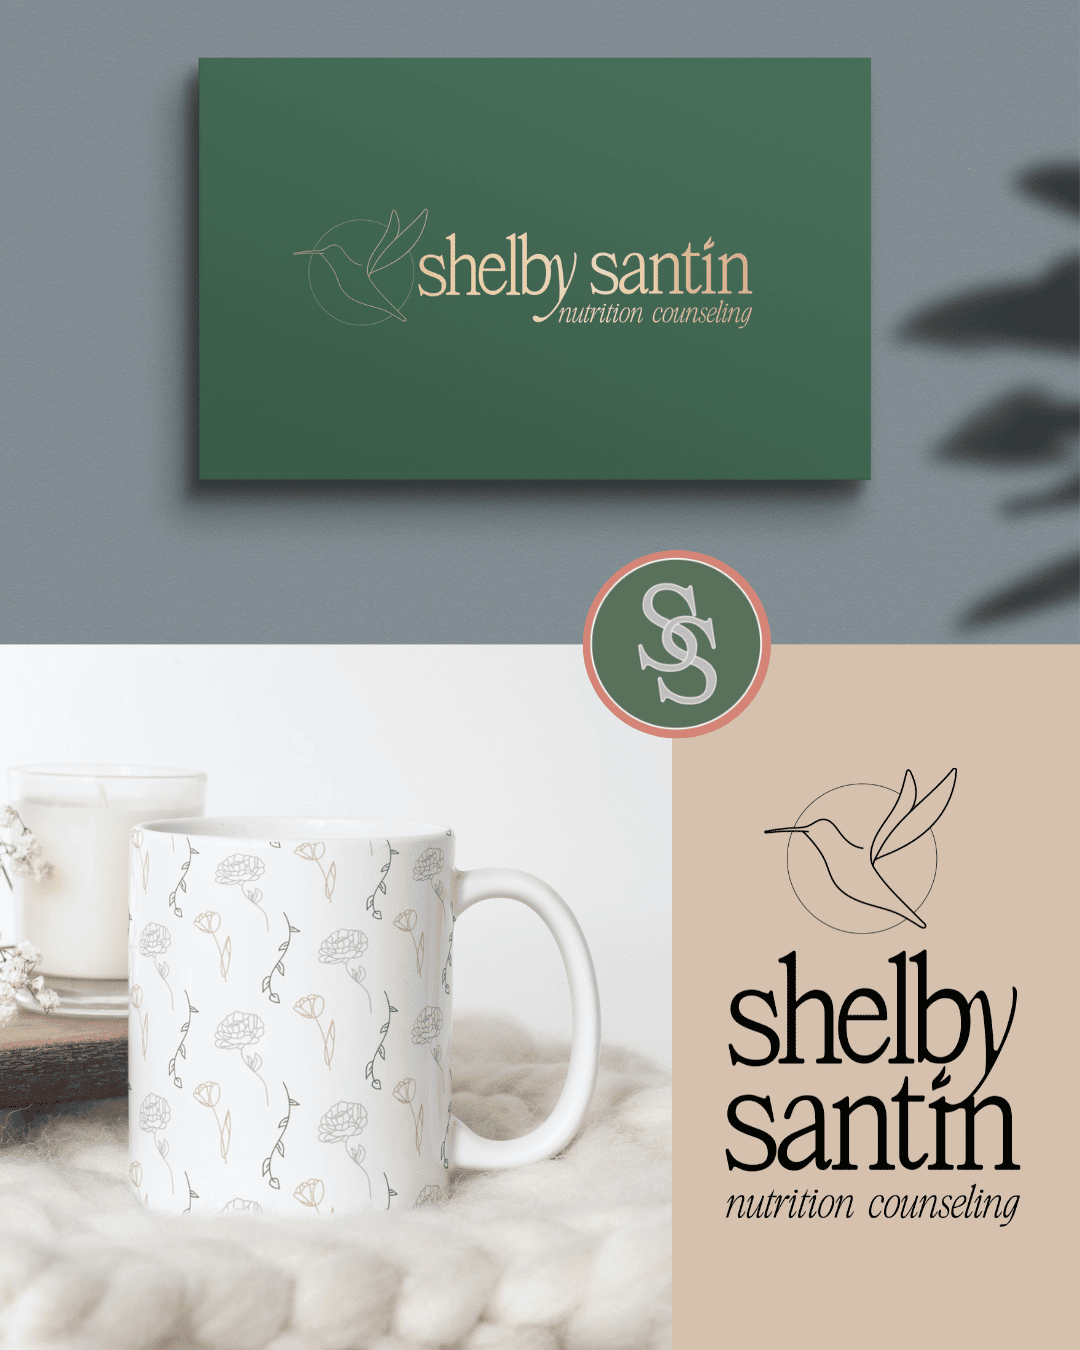 shelby santin dietitian logo branding